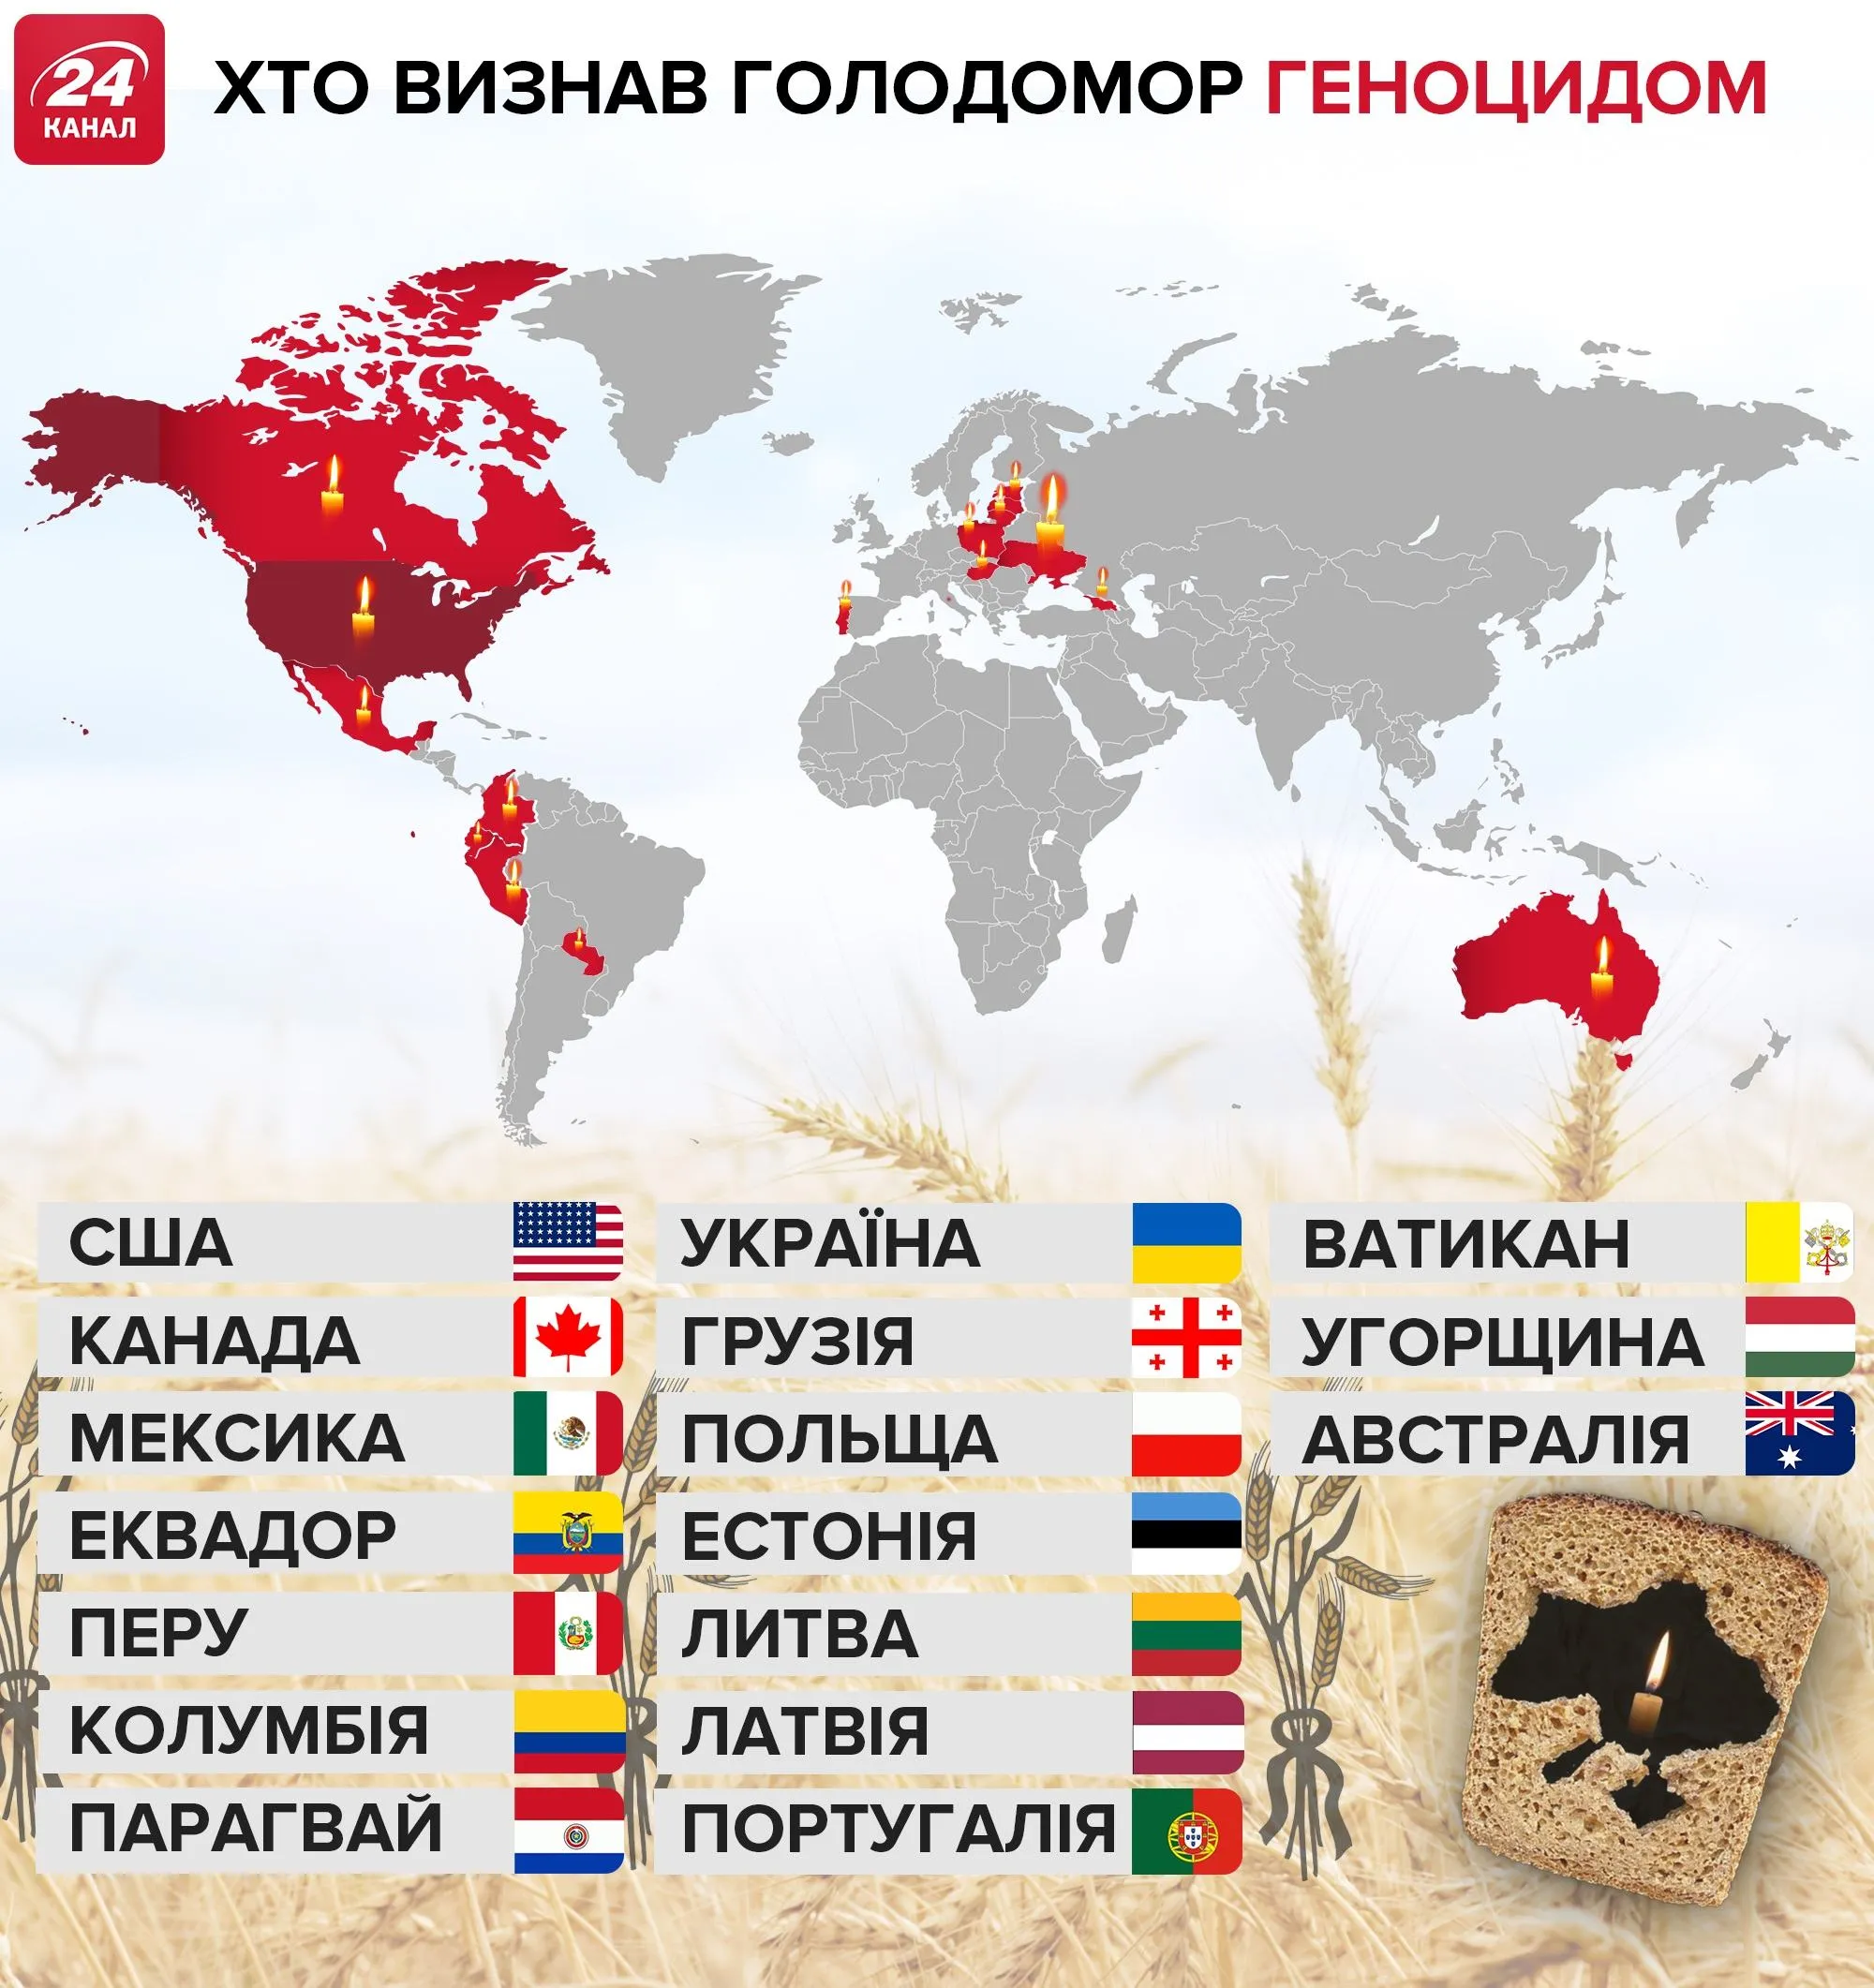 Країни, що визнали Голодомор в Україні геноцидом